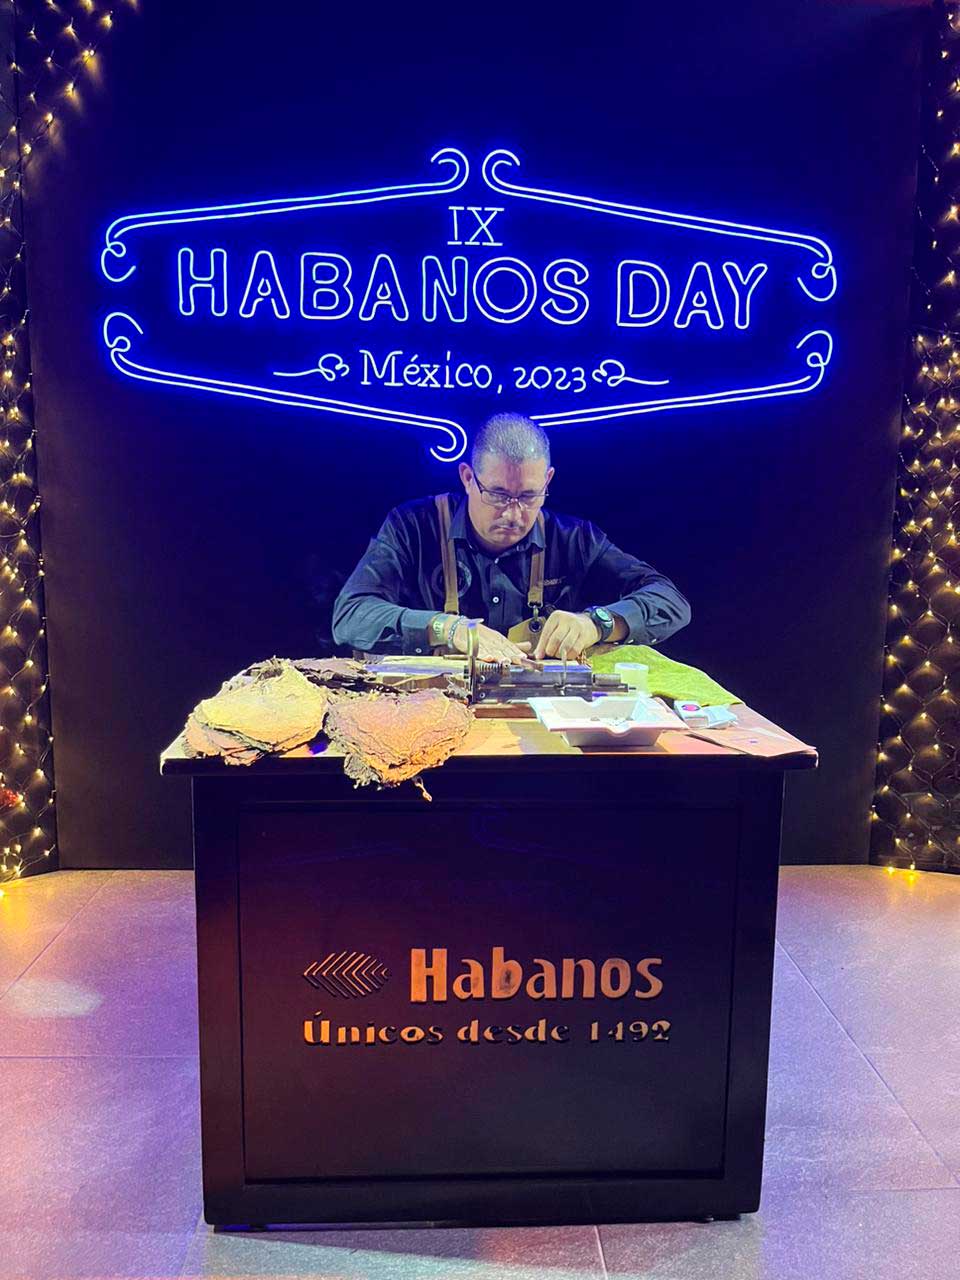 Sabores de Cuba en "Habano's Day 2023": Maridajes, cócteles y gastronomía en un solo lugar